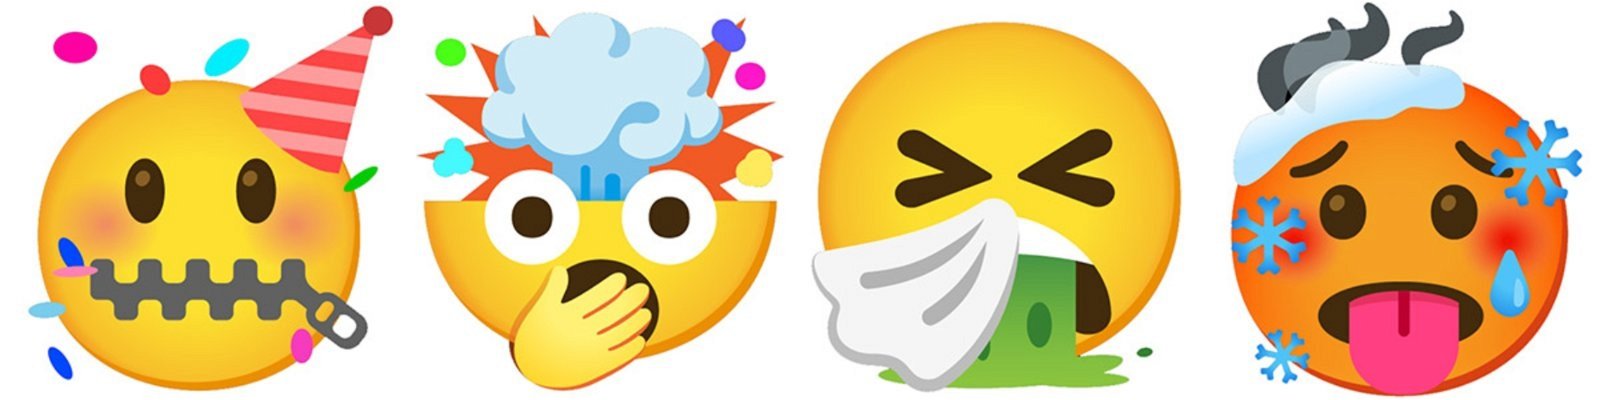 emojis combinados para obtener diferentes caras 2